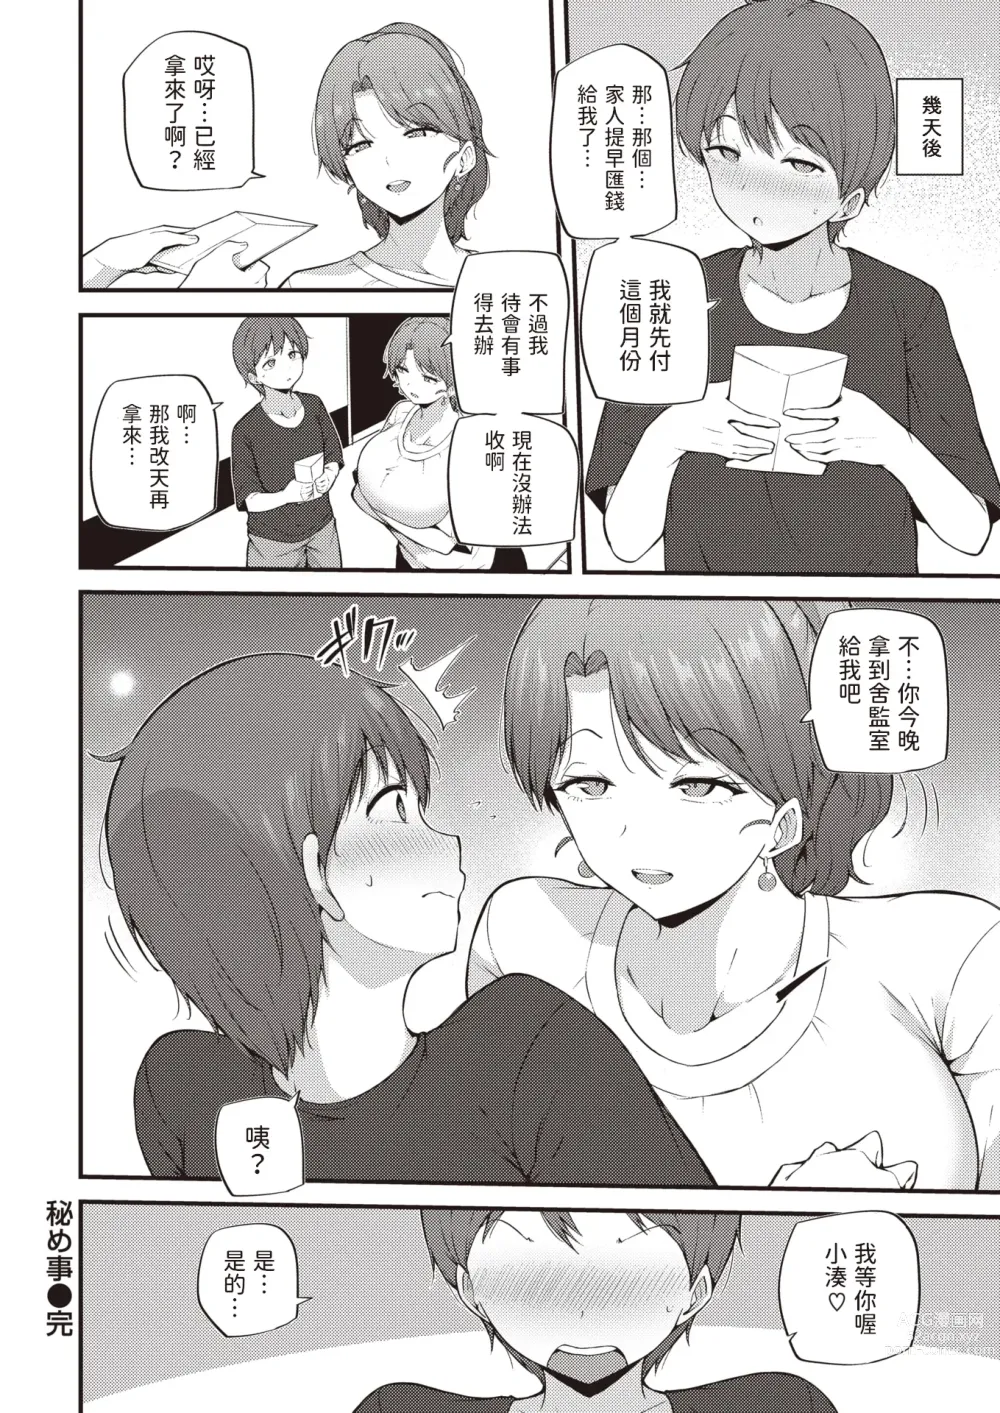 Page 16 of manga Himegoto